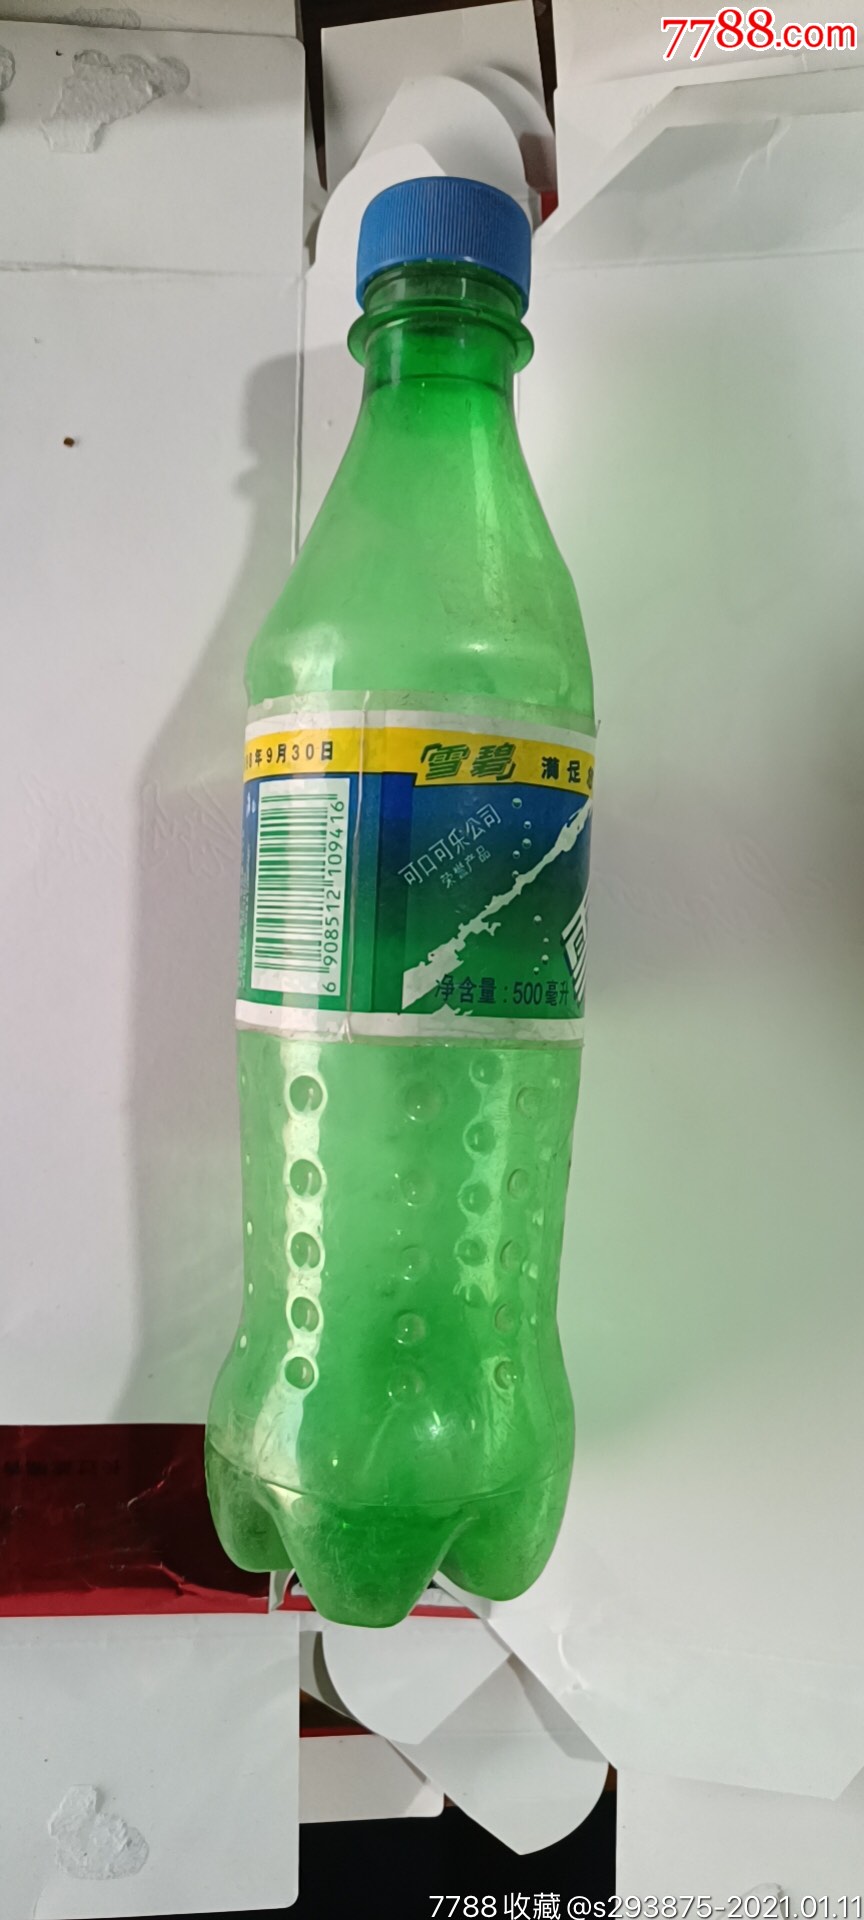 90年代的小雪碧瓶子极为罕见